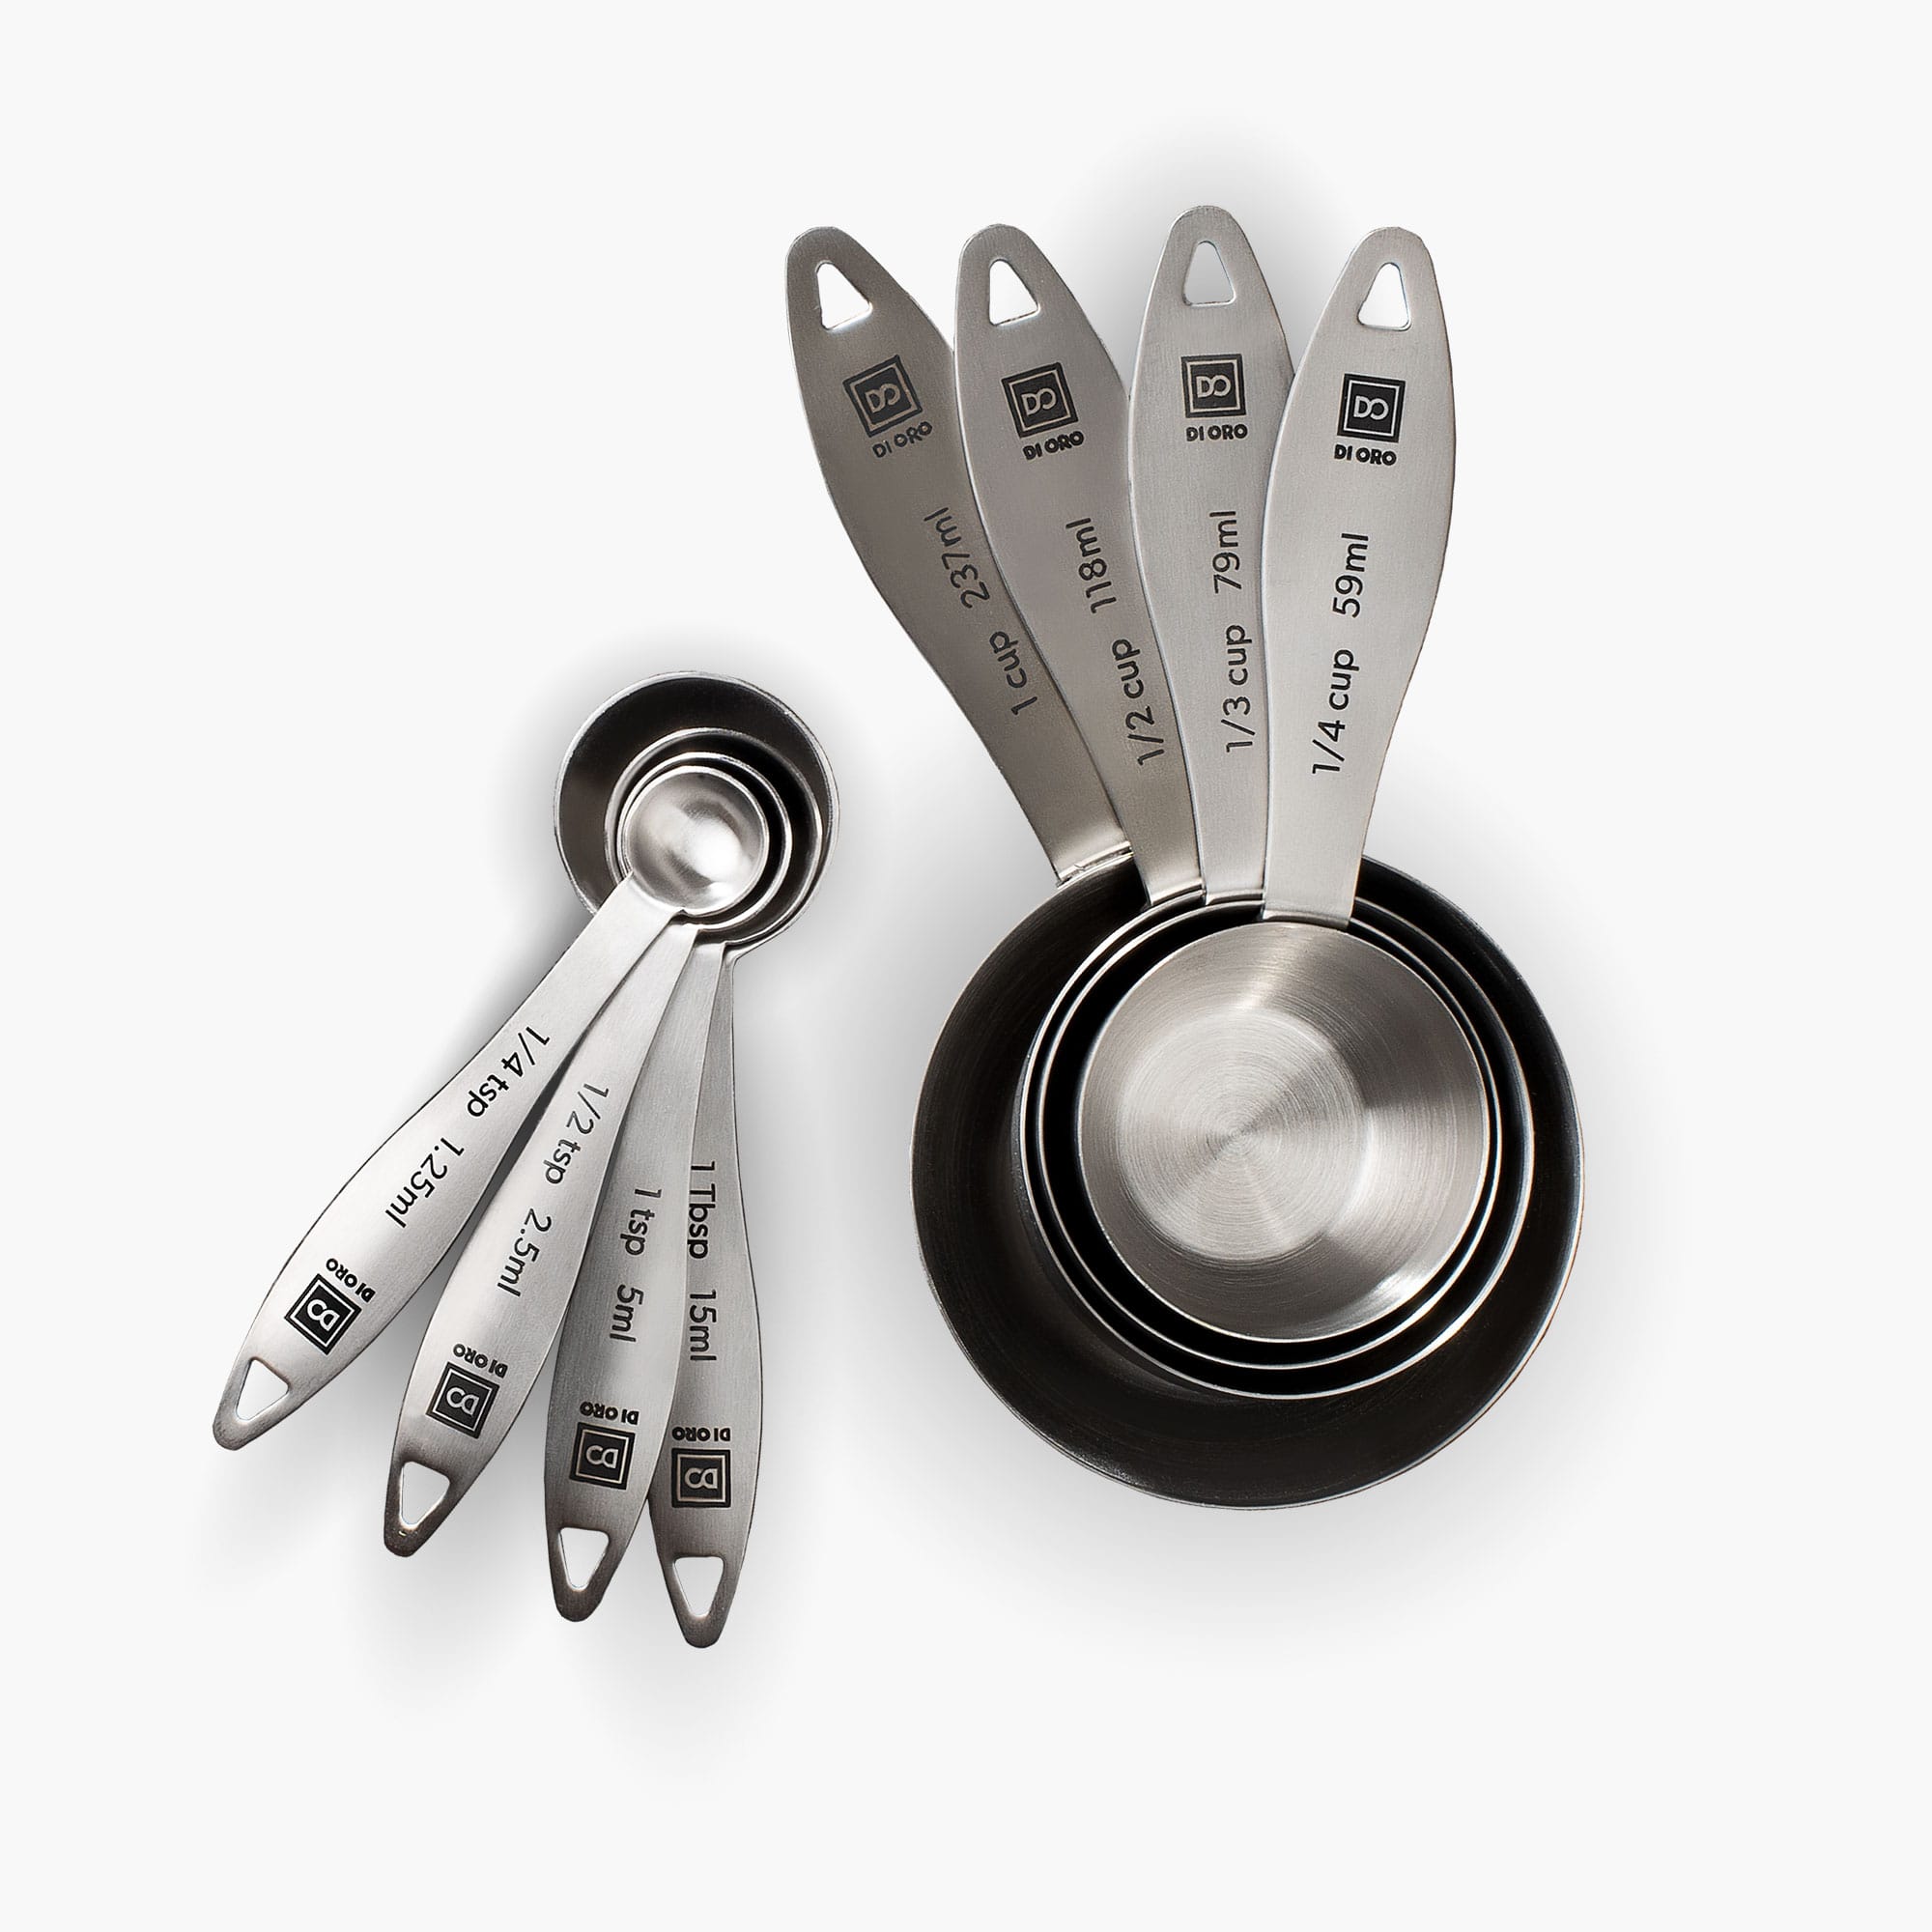 Measuring Cups and Spoon Set of 15 | U-Taste